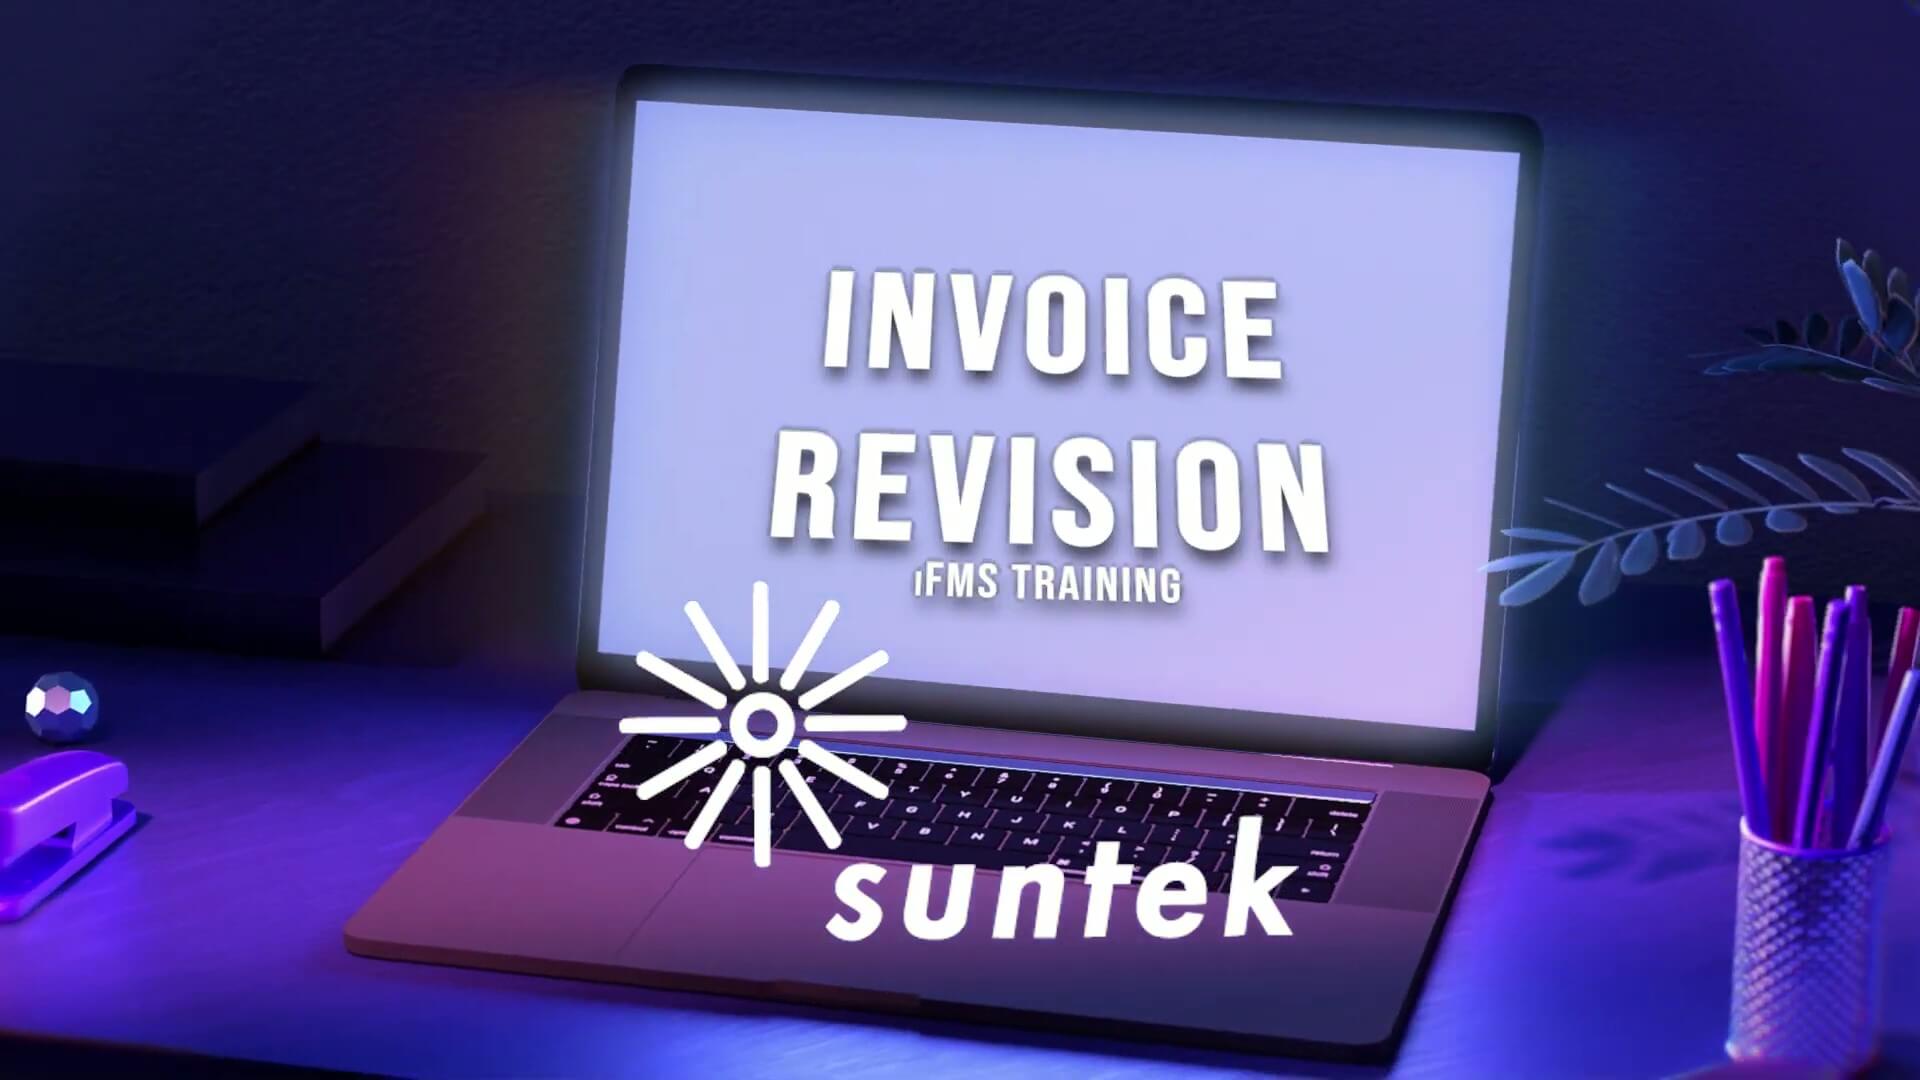 Invoice Revision